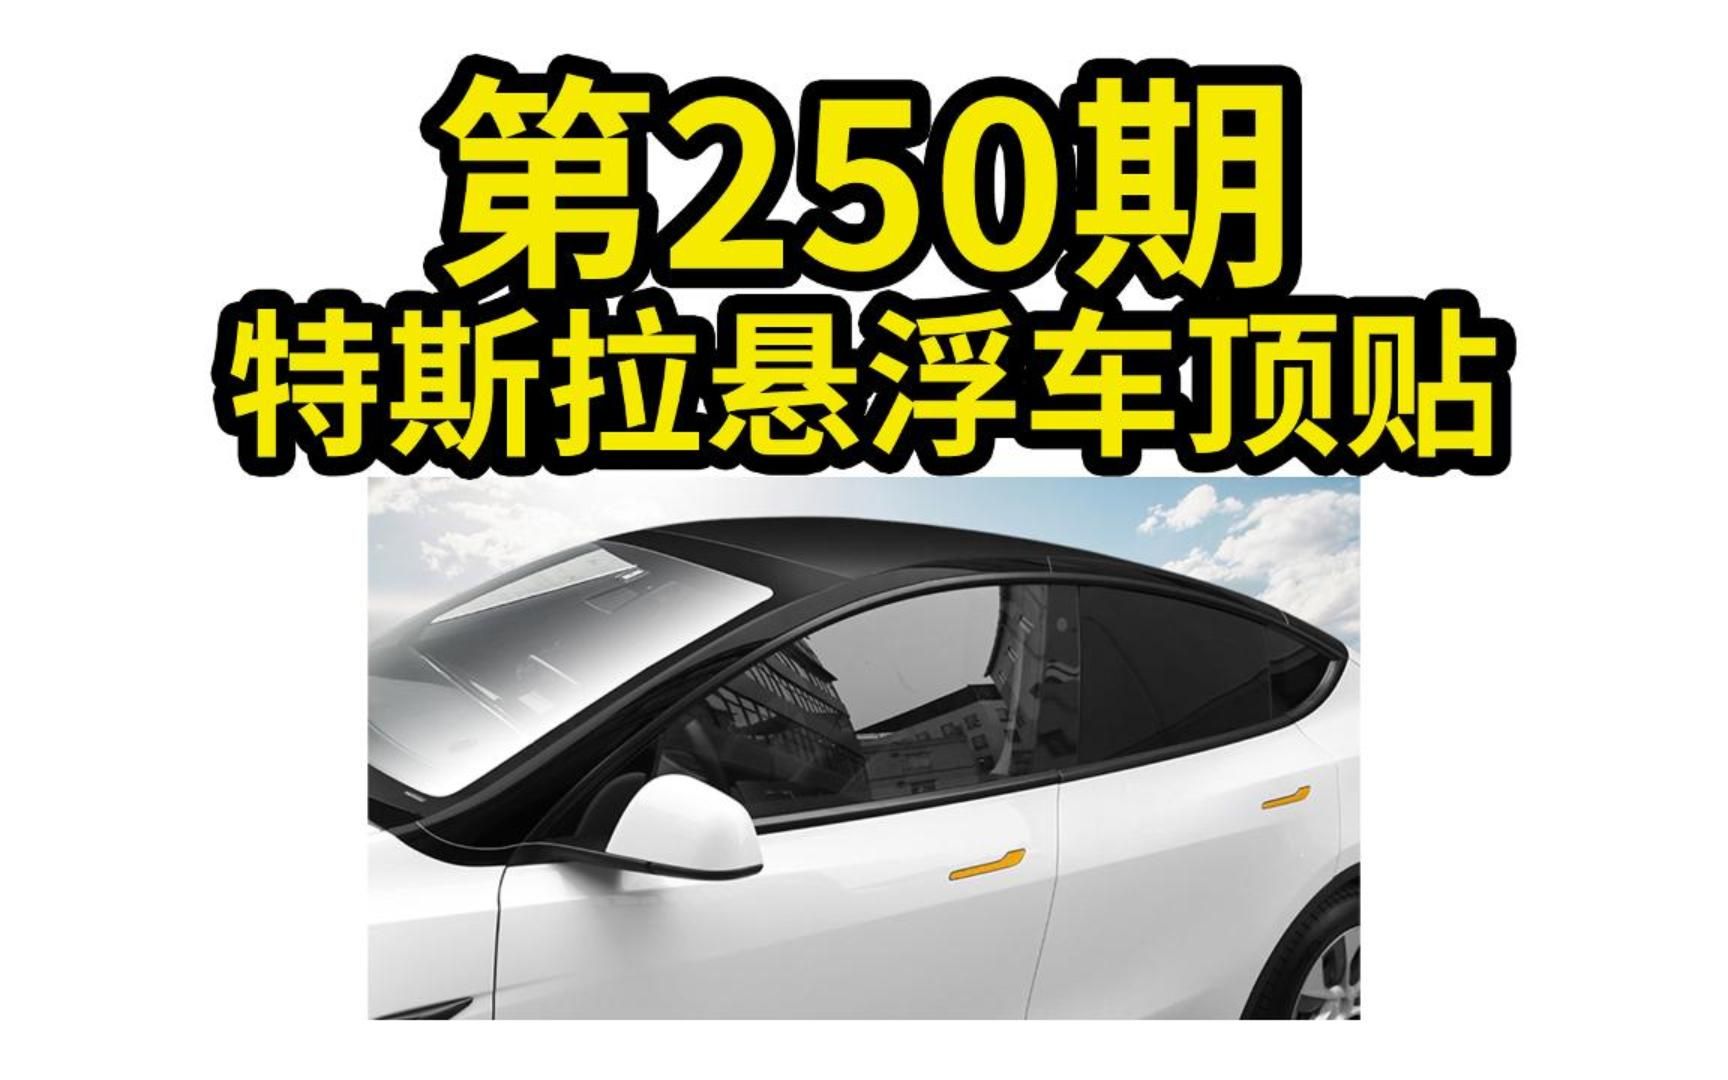 2023.3.16 第250期 特斯拉悬浮车顶贴【modelY】